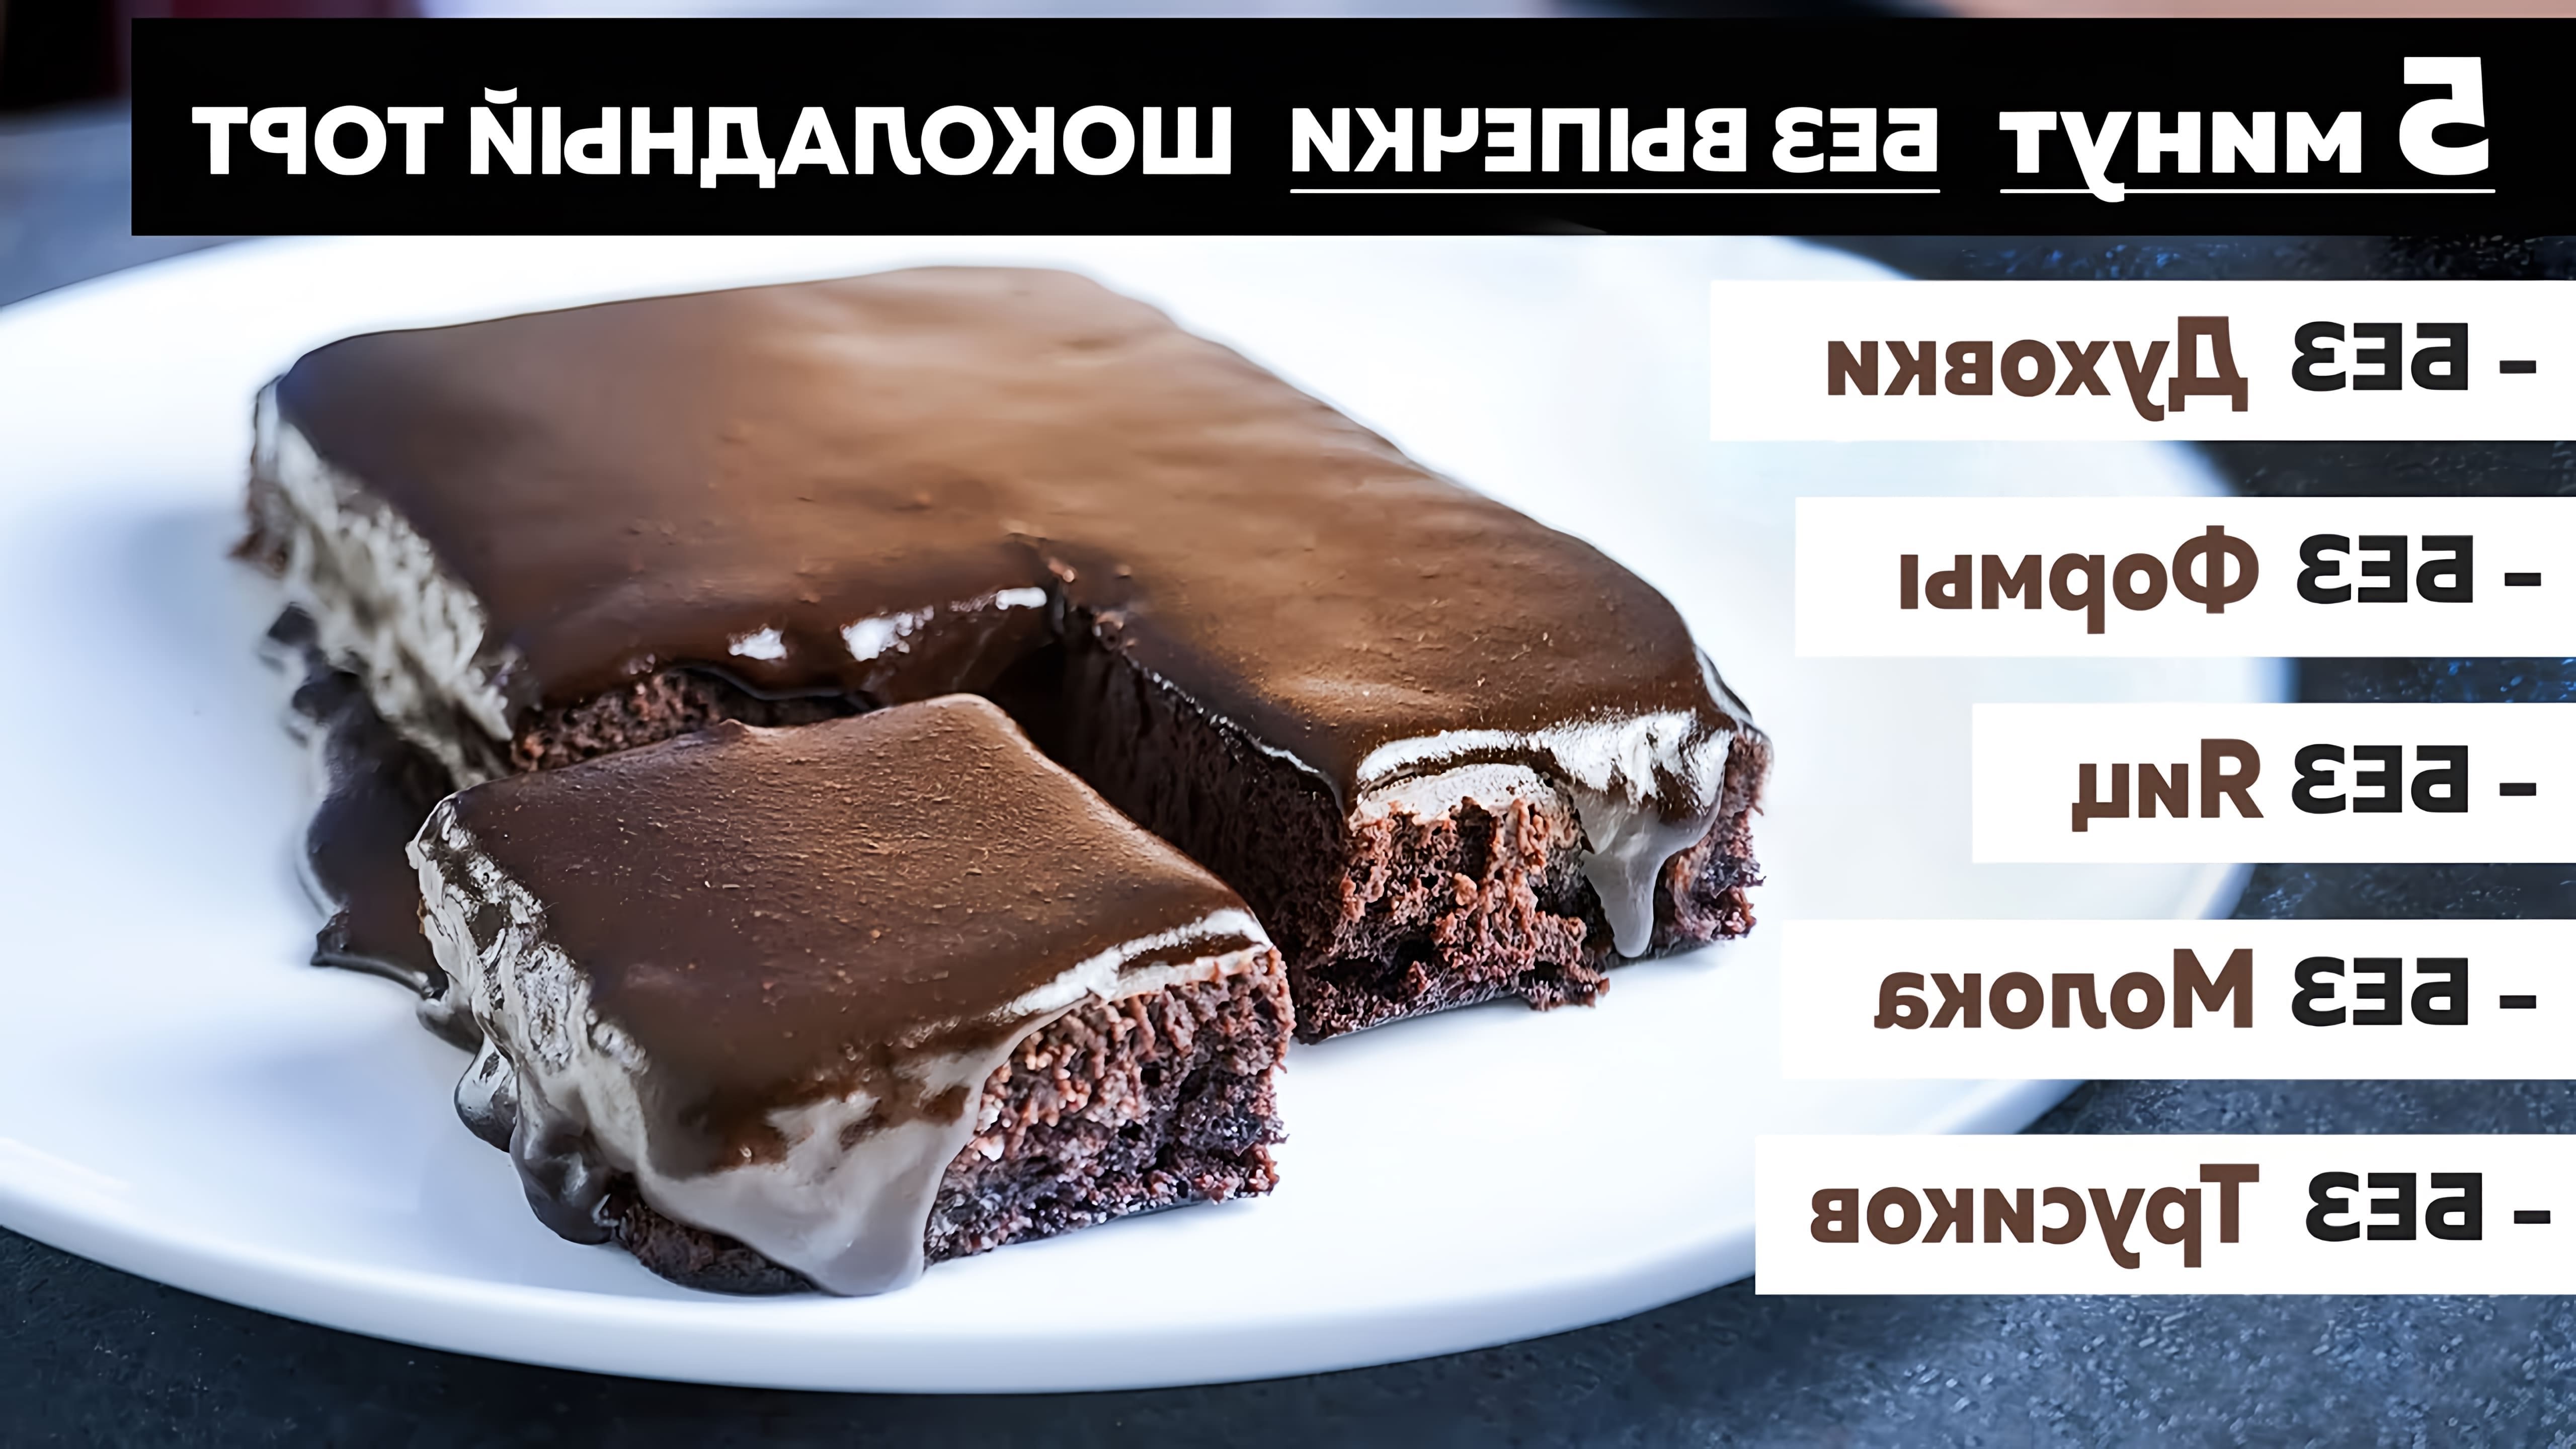 В этом видео демонстрируется рецепт шоколадного торта без выпечки, который можно приготовить всего за 5 минут